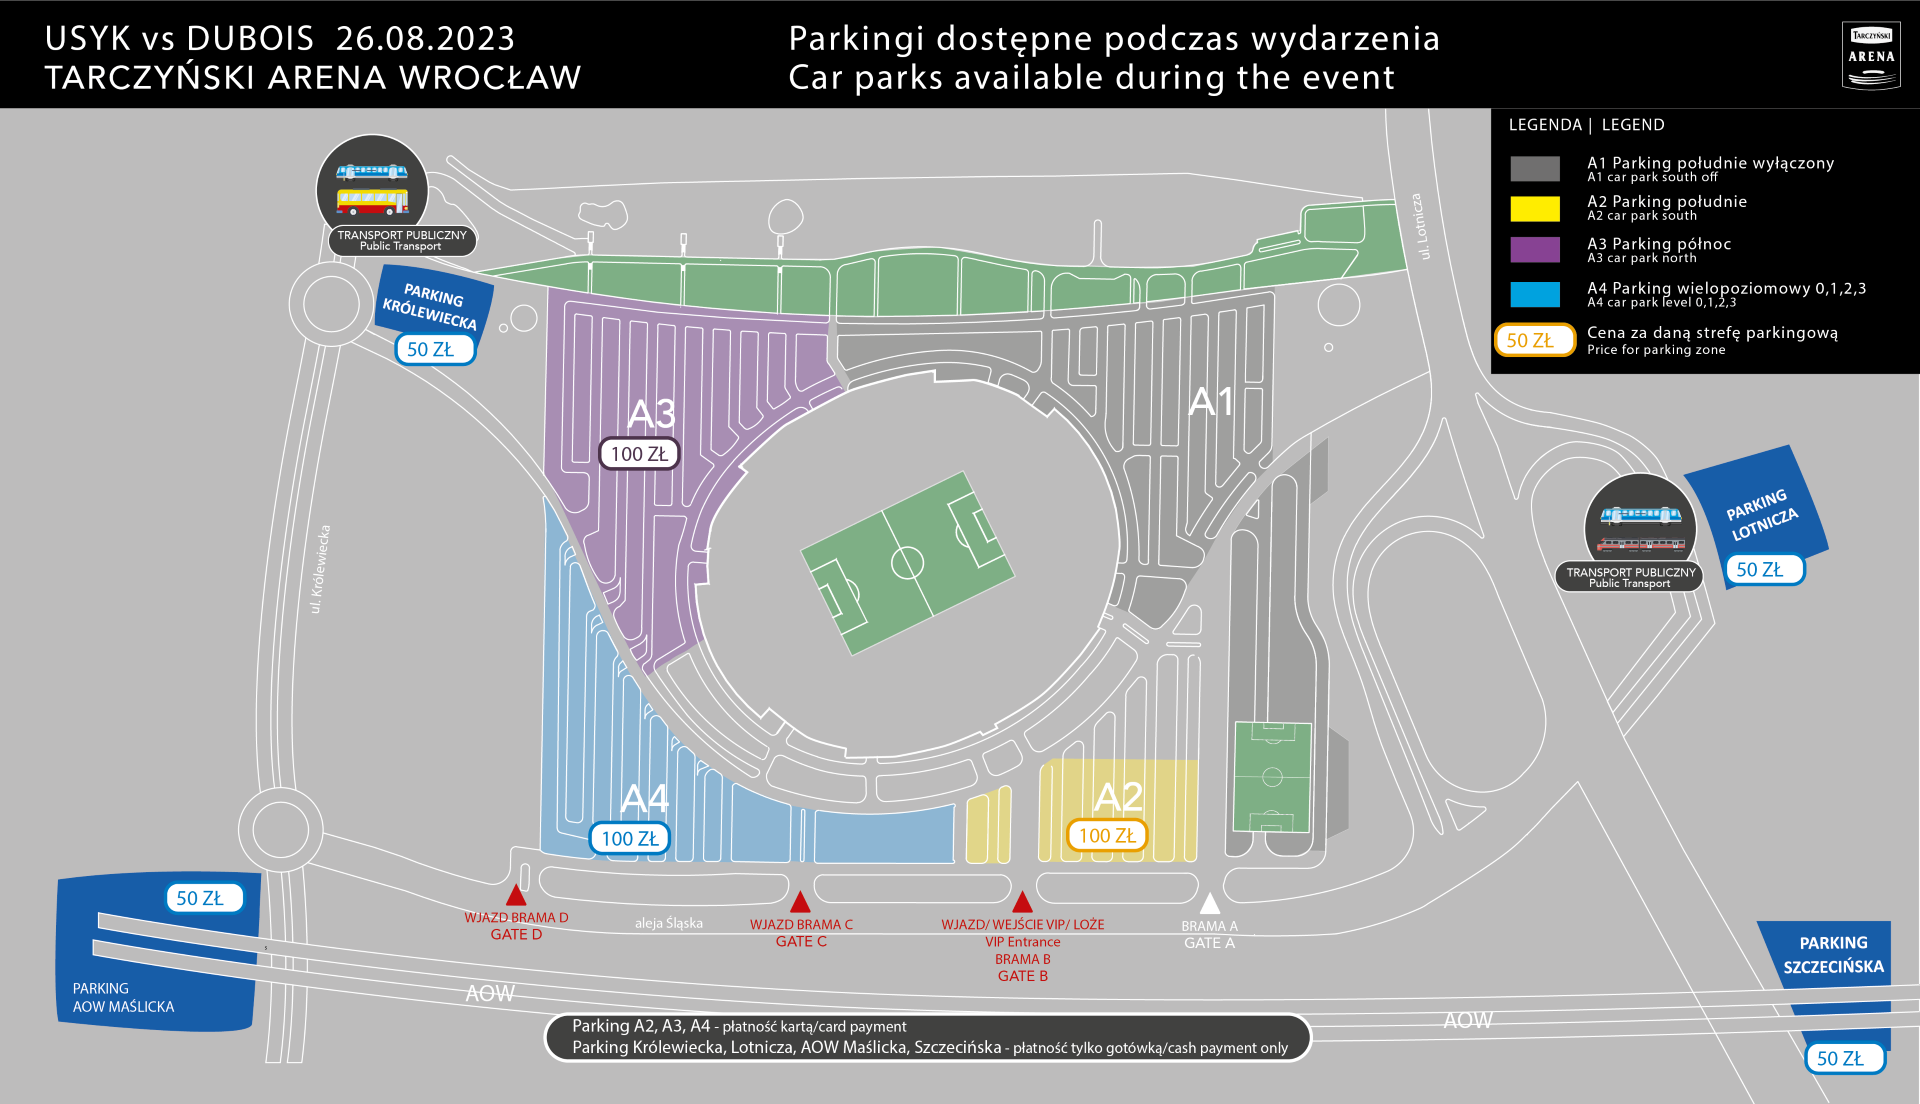 Powiększ obraz: Mapa przedstawia rozmieszczenie parkingów dostępnych przed walką Usyk vs Dubois